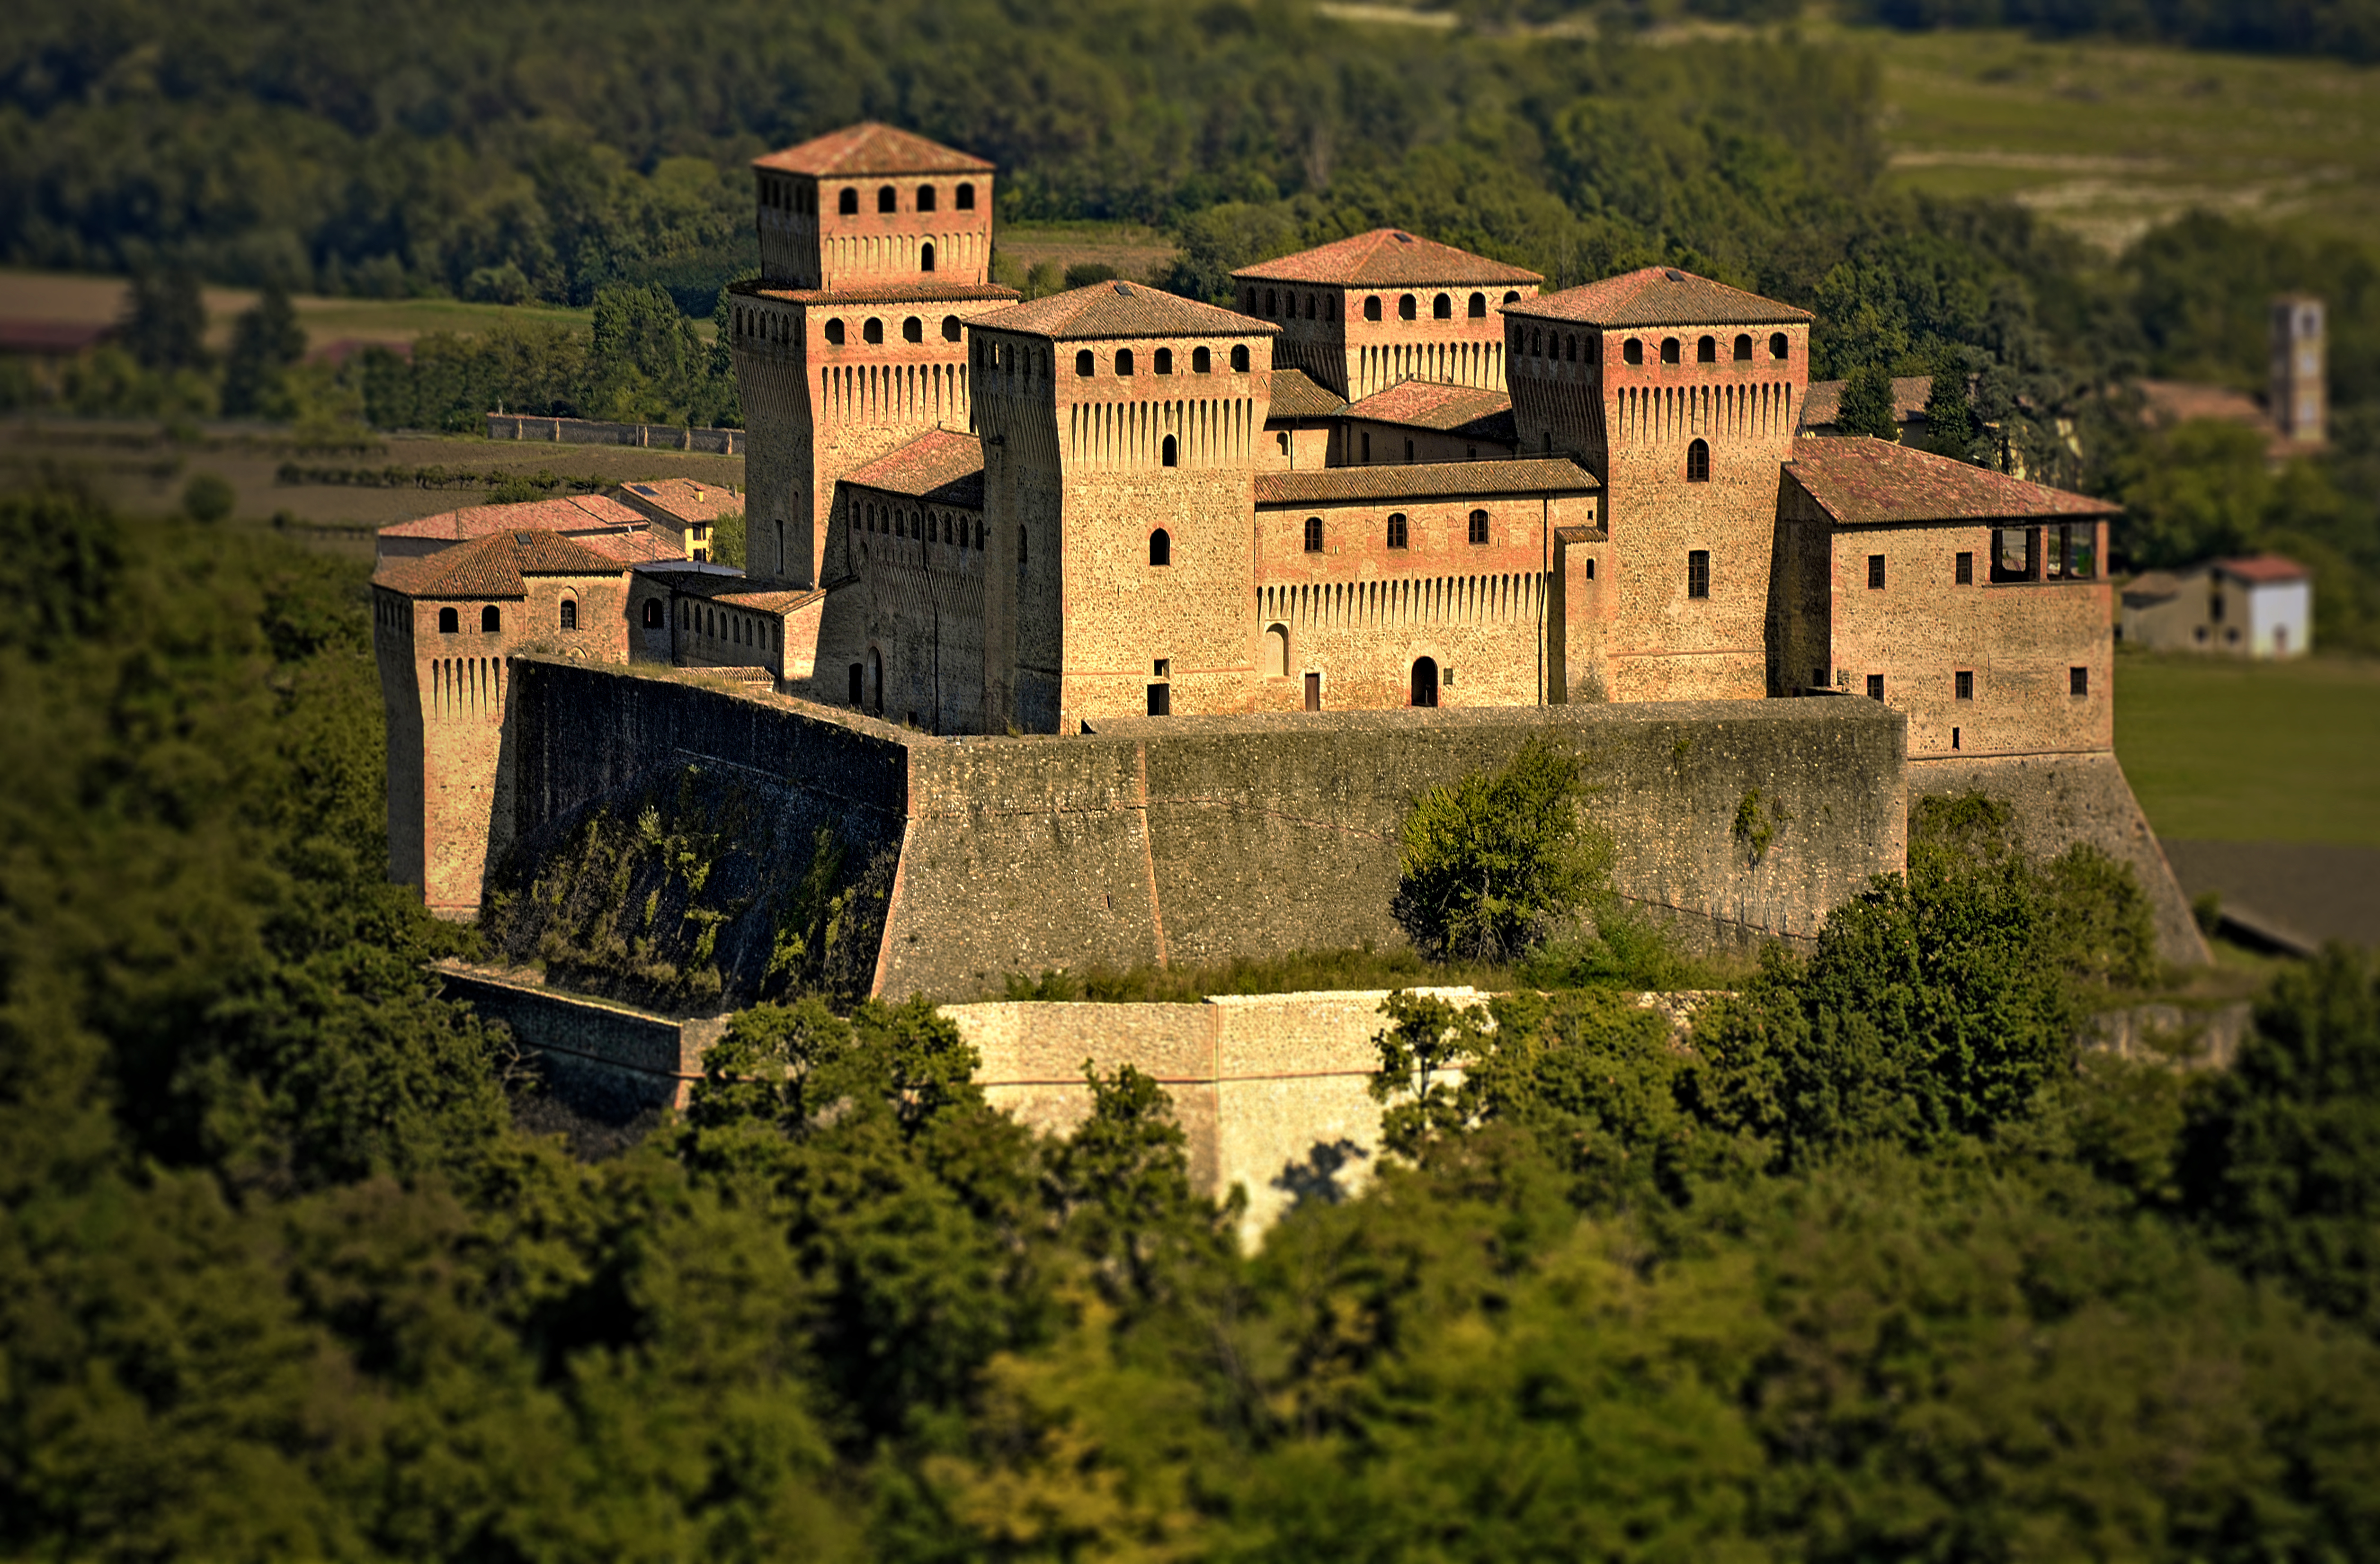 photo: https://upload.wikimedia.org/wikipedia/commons/f/f8/Tramonto_sul_castello_di_Pier_Maria_II_de%27_Rossi.jpg